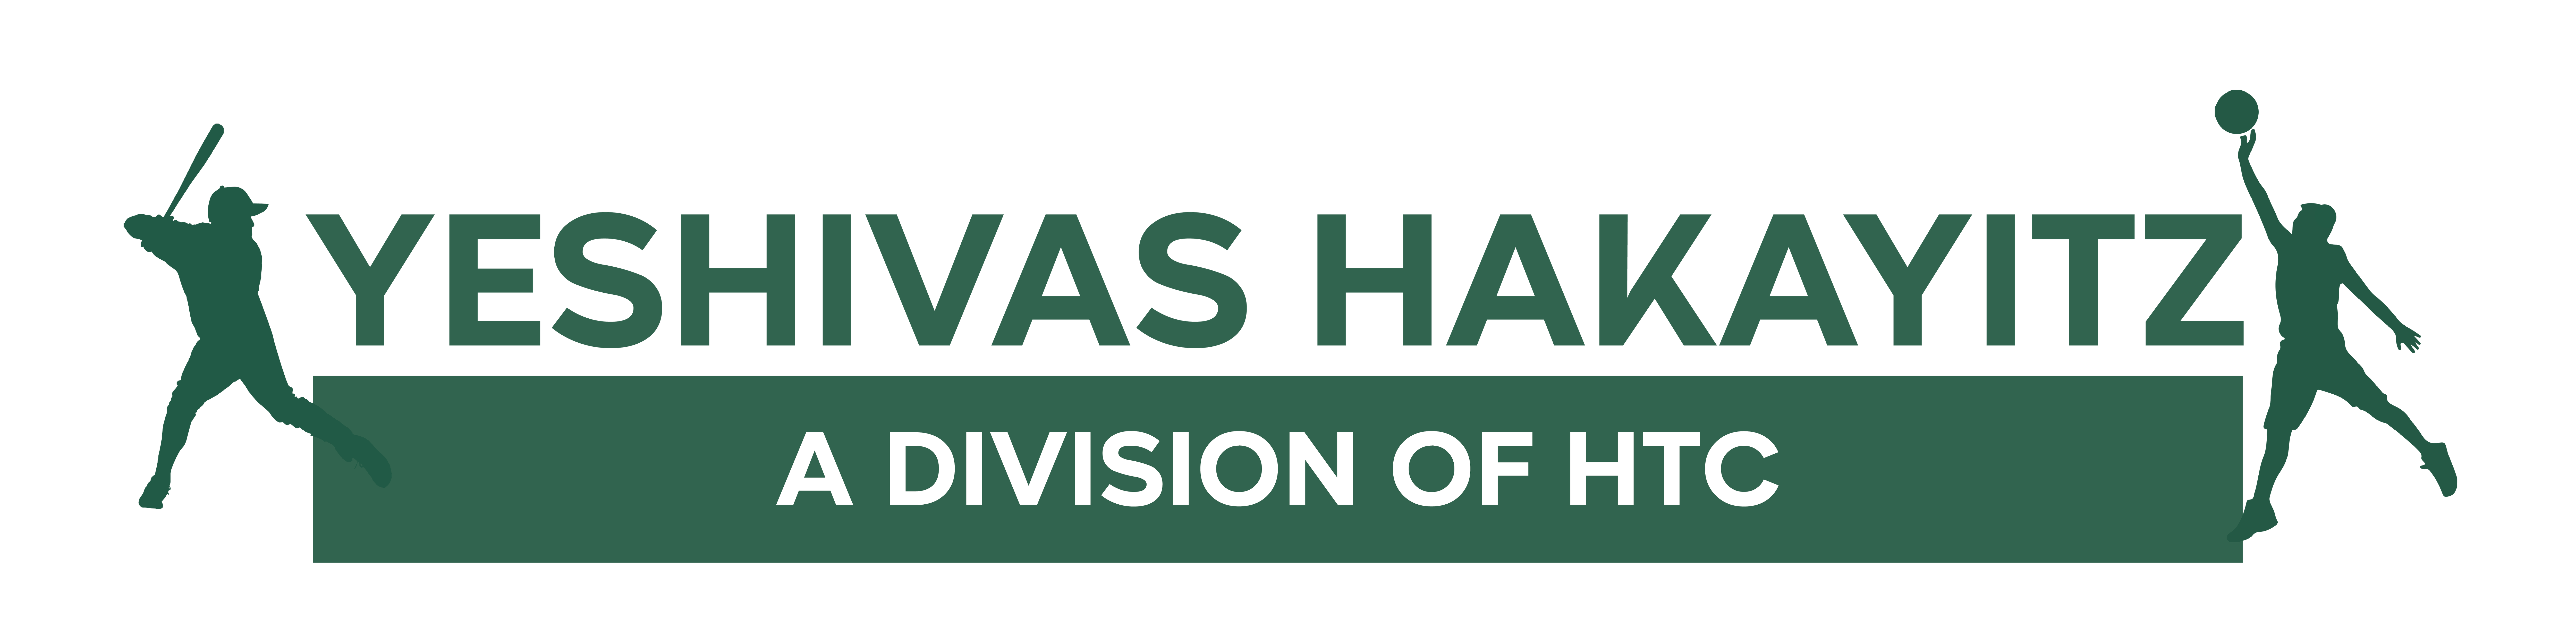 Yeshivas Hakayitz a Division of HTC